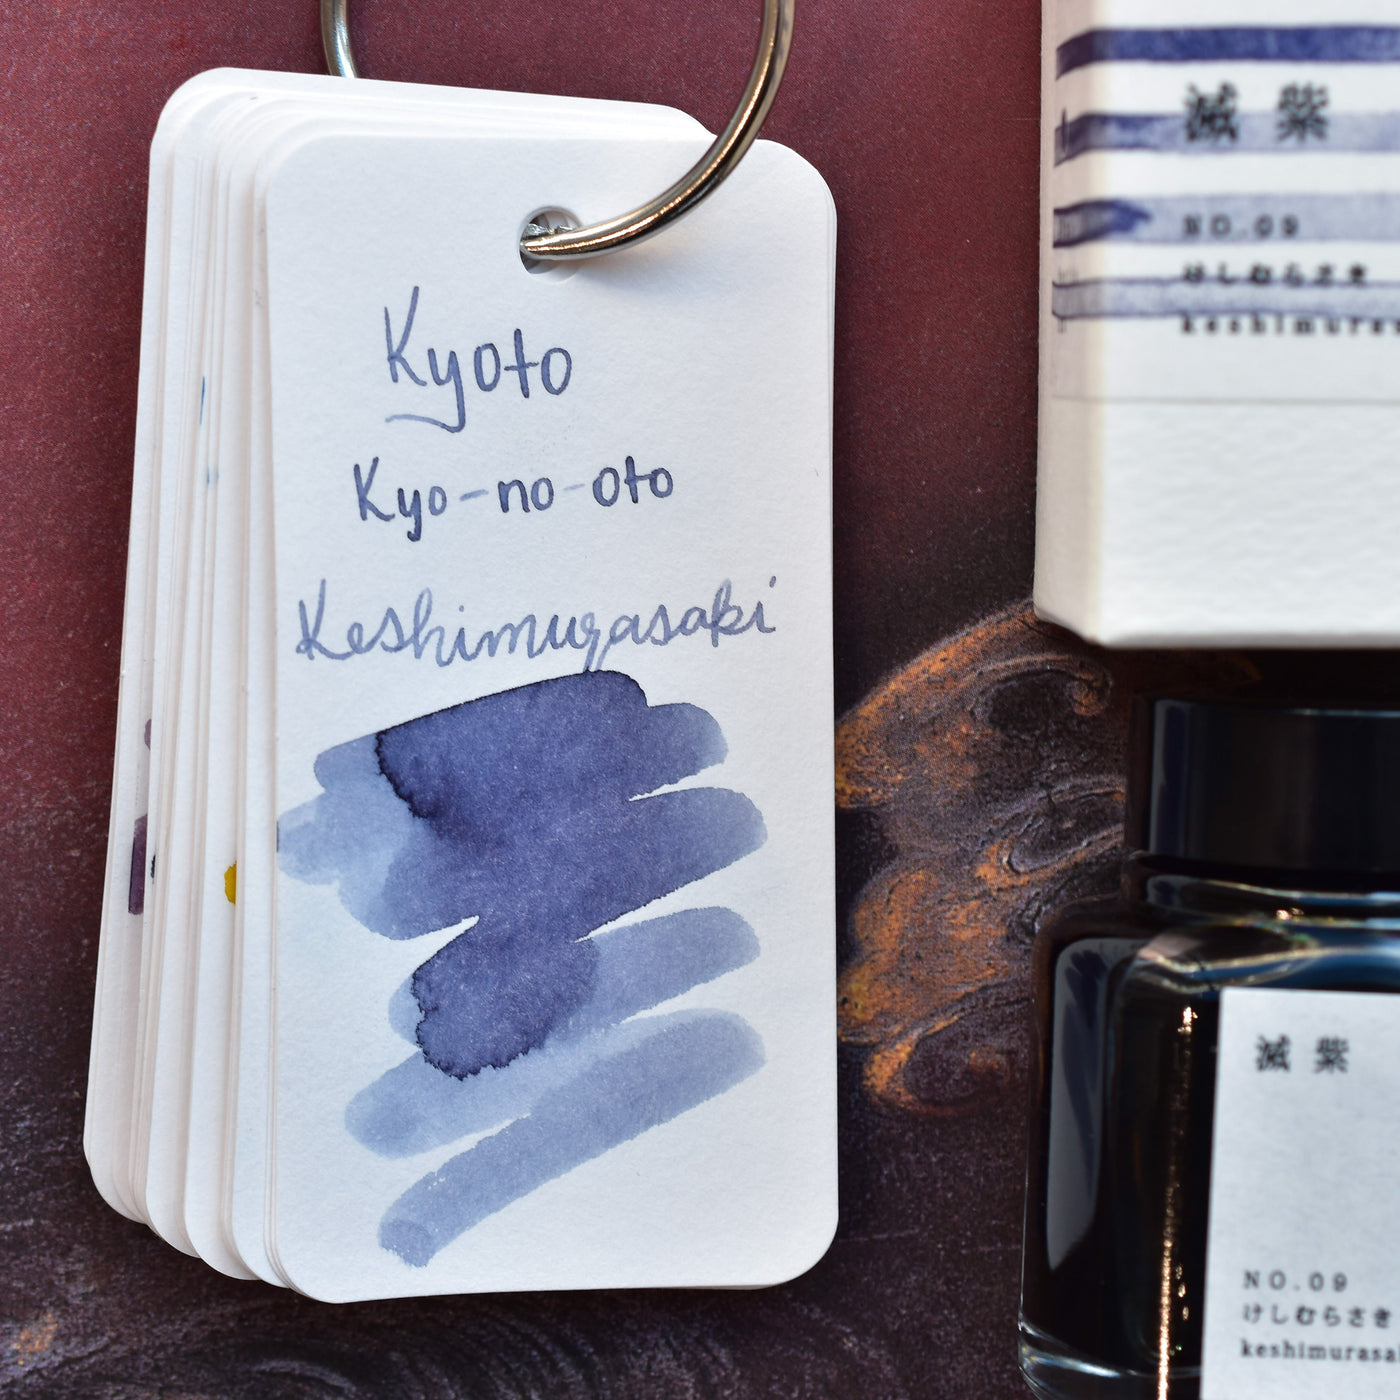 Kyoto TAG Kyo-no-Oto No. 9 Keshimurasaki Ink Bottle